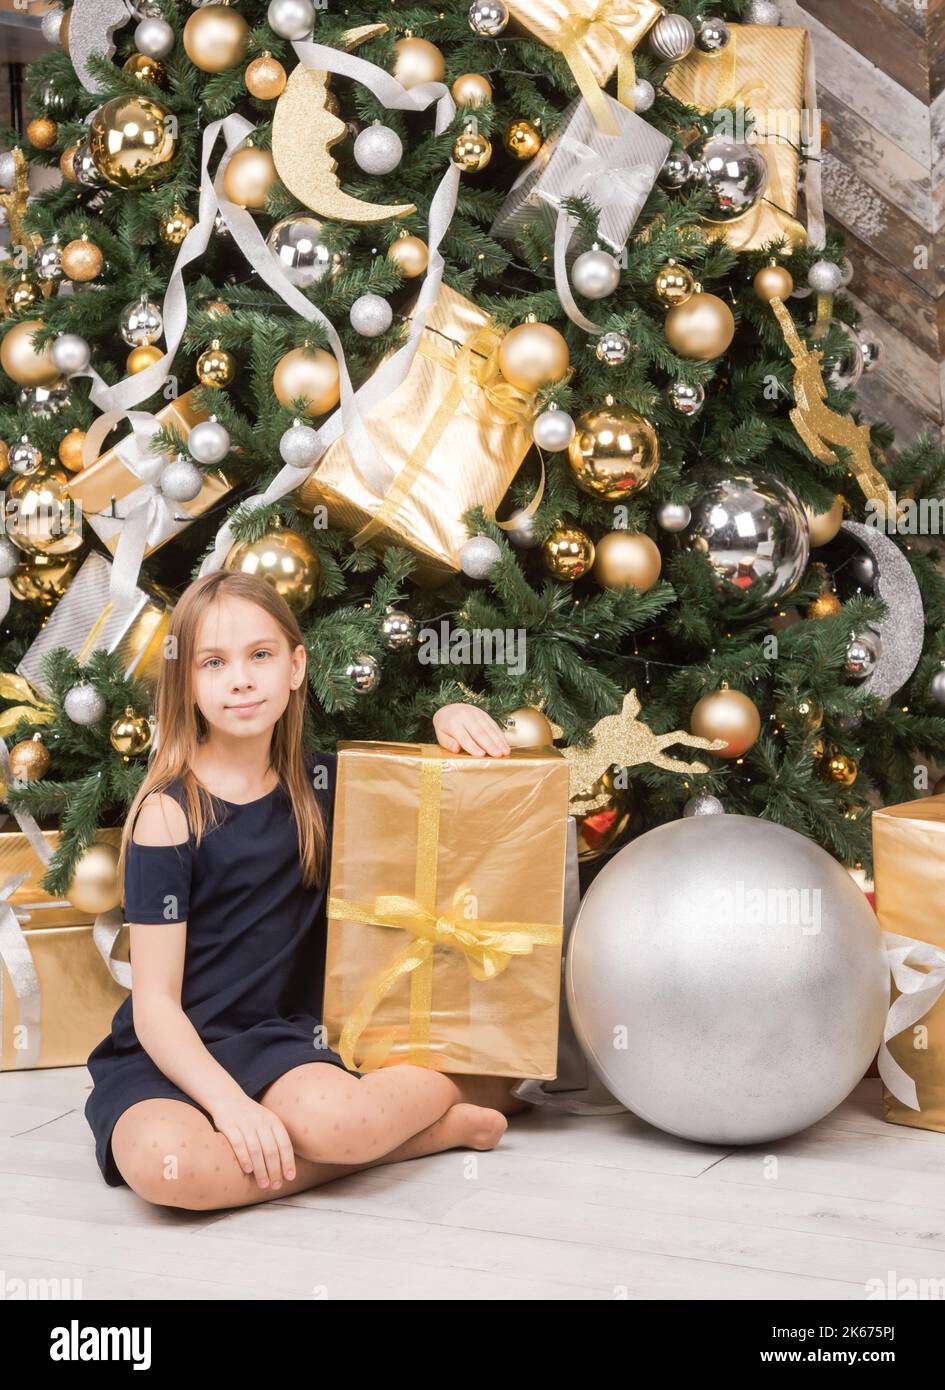 Ritratto di ragazza preteen indossa vestito blu seduto tra i regali impacchettati nei pressi di albero di Natale decorato felice di avere un sacco di regali sul Boxing Day Foto Stock